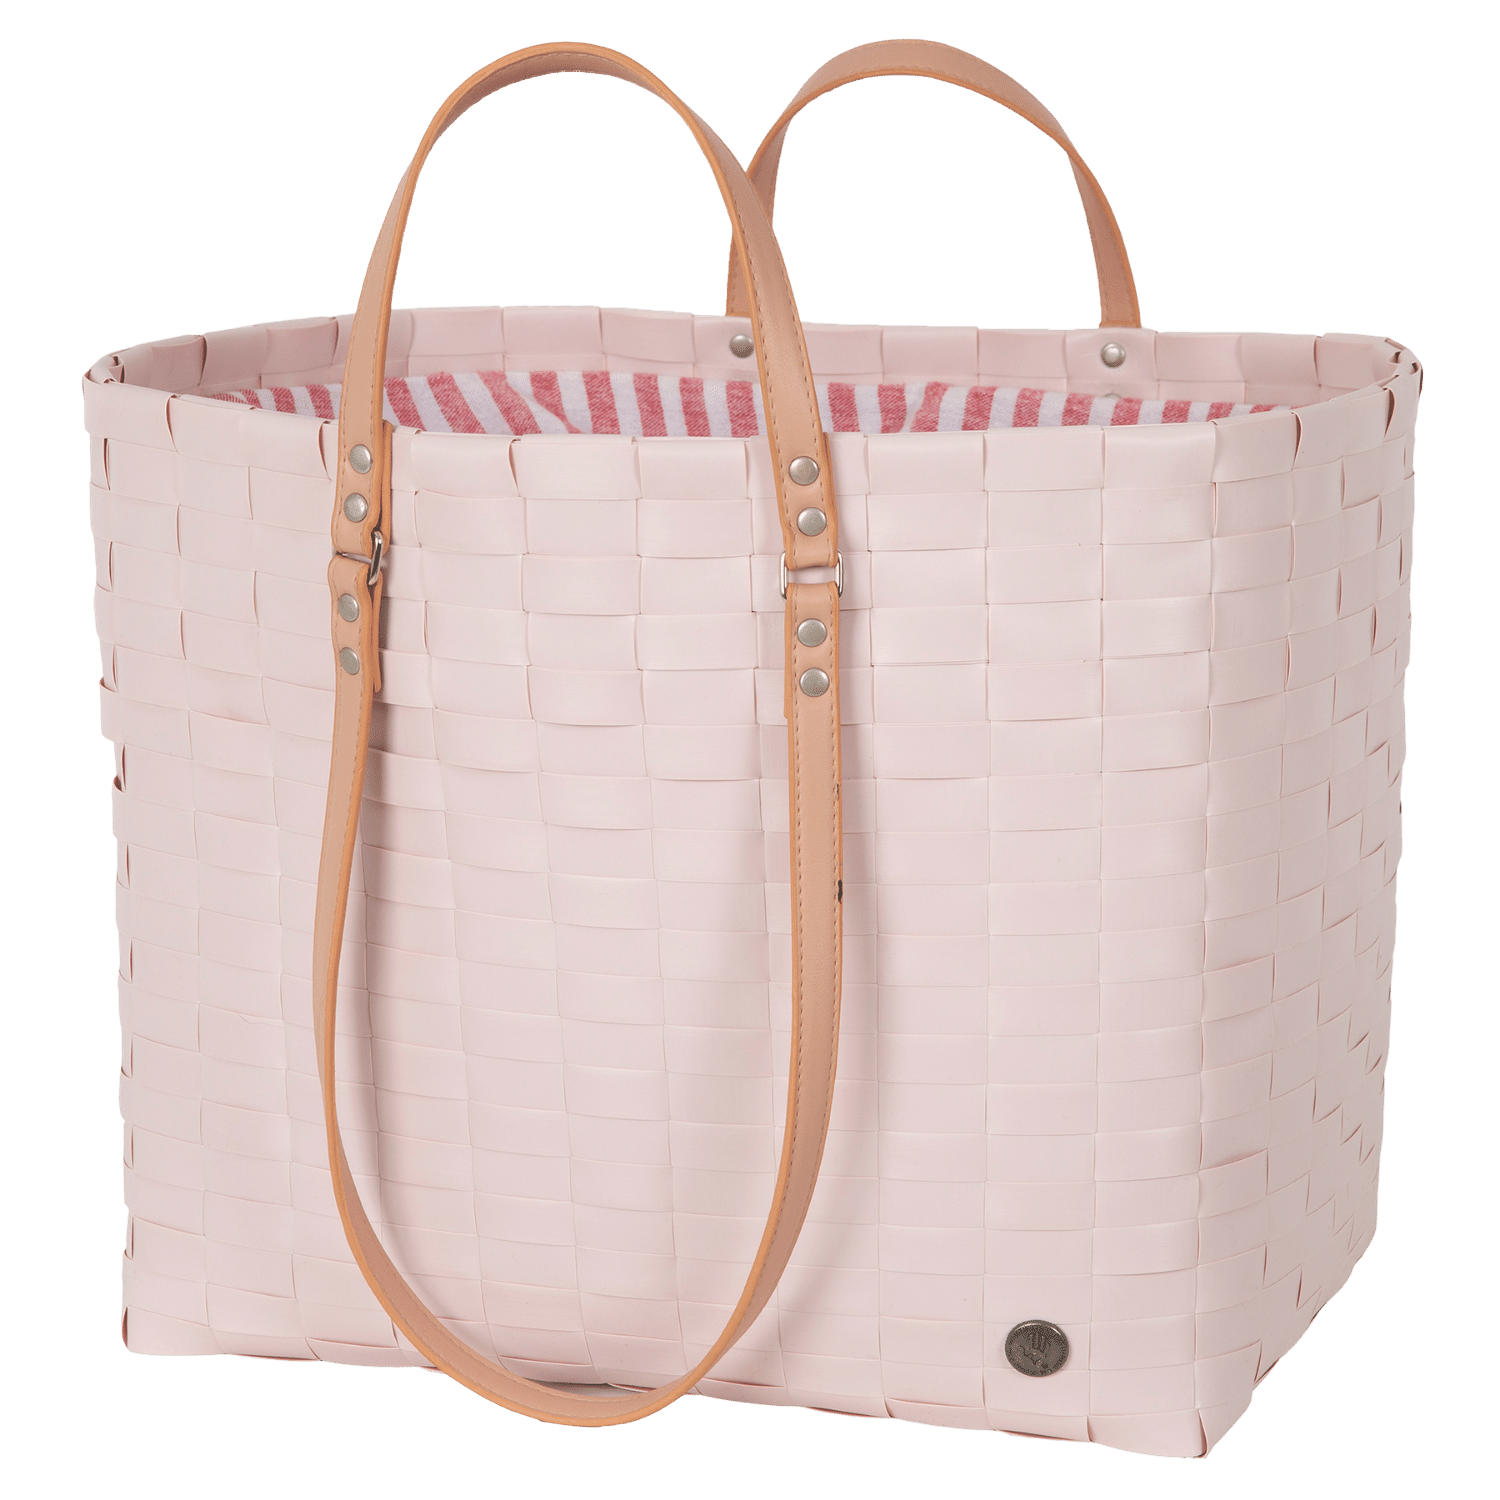 GO! shopper sac de plage courses sport refermable couleur rose pâle et tissu rayures blanc corail avec anse handed by